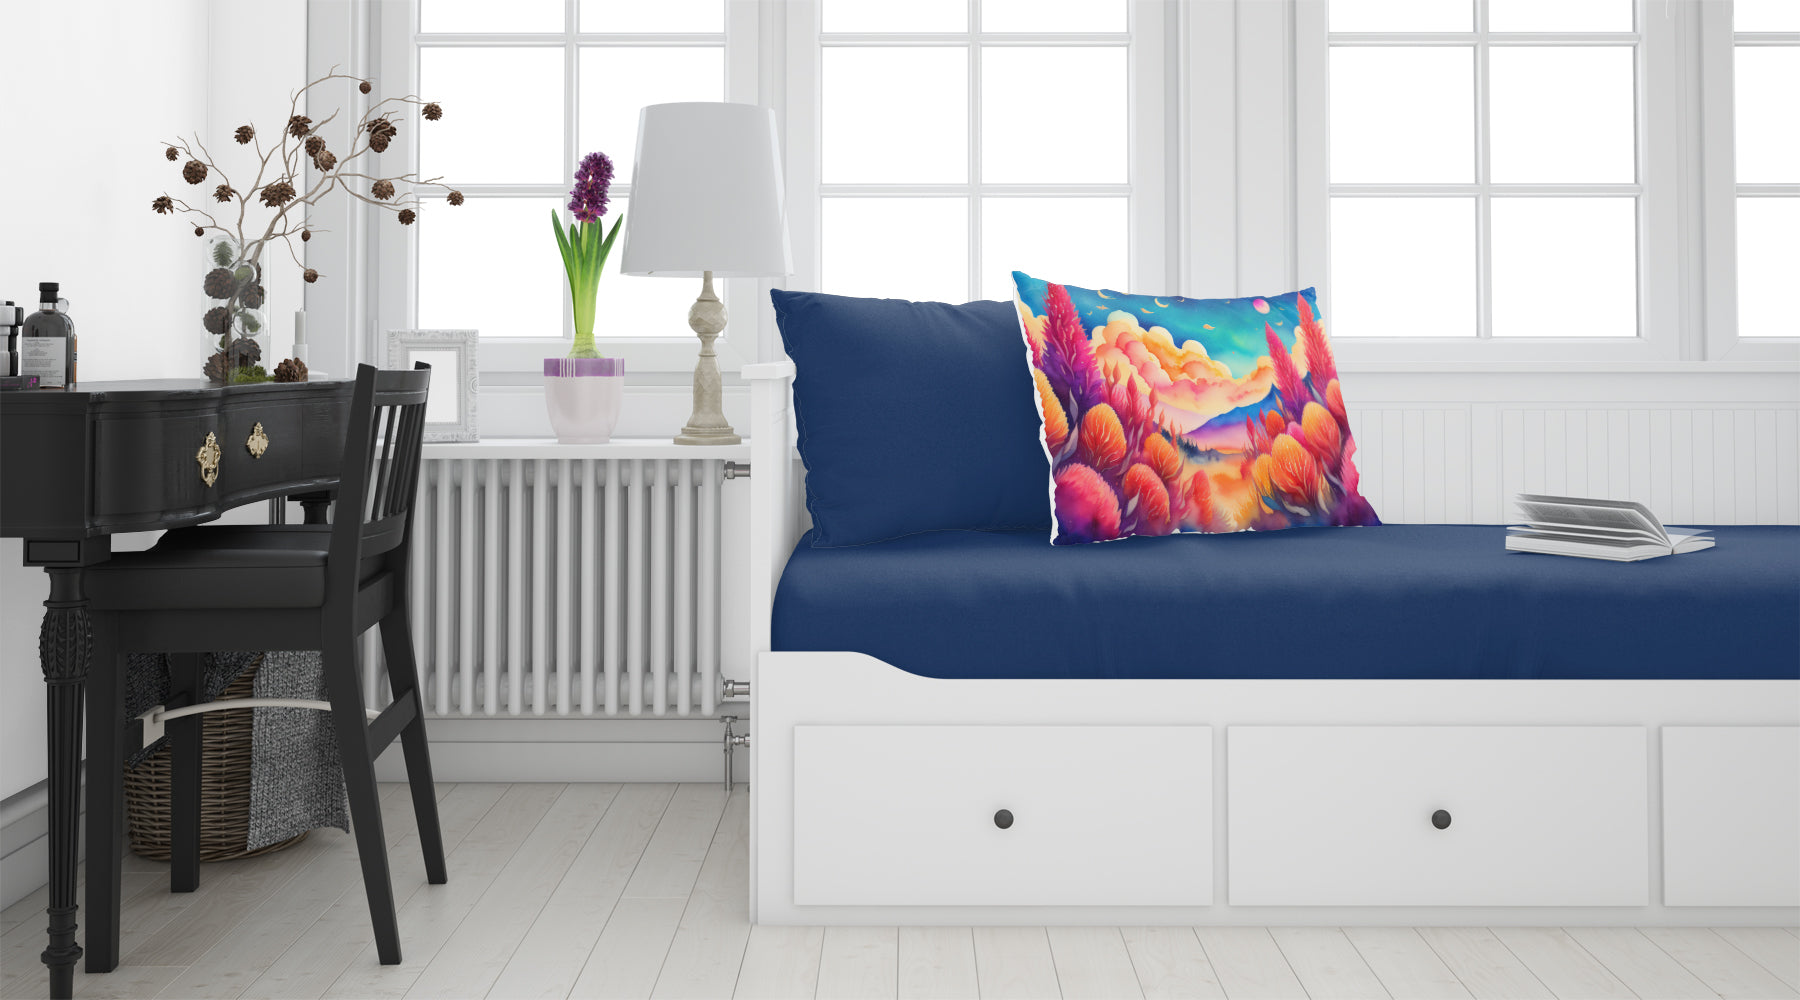 Celosia in Color Fabric Standard Pillowcase